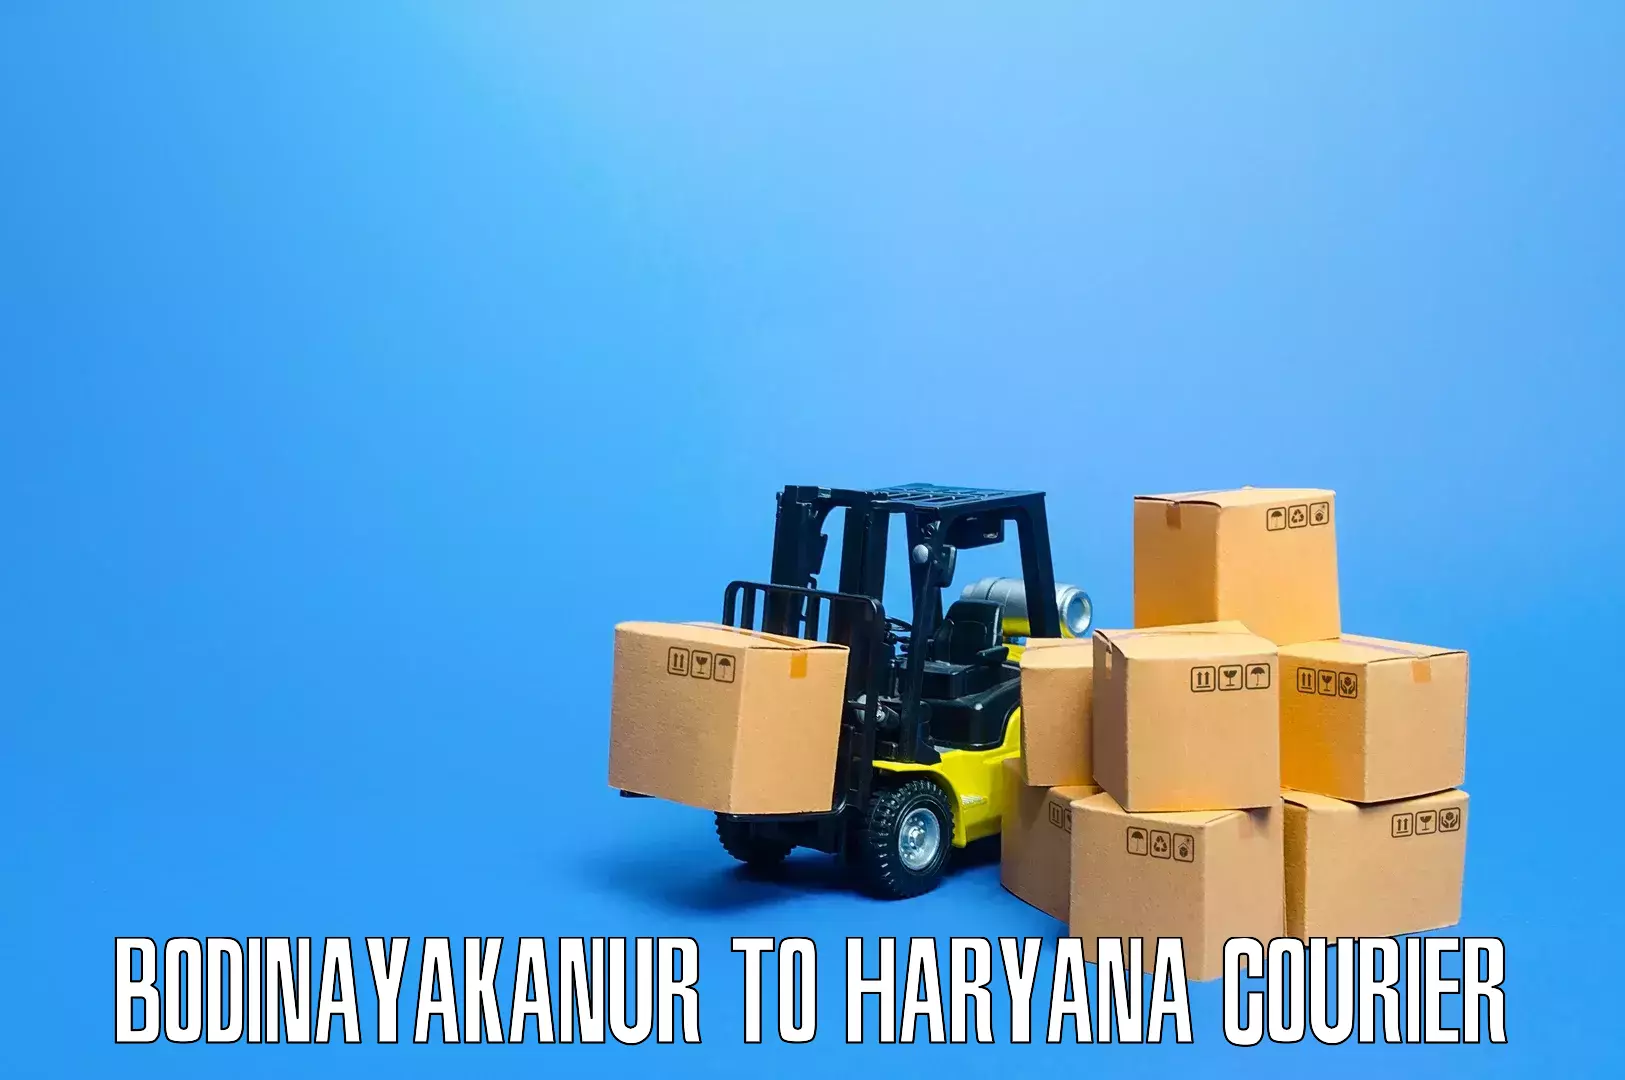 Efficient packing and moving Bodinayakanur to Bhuna